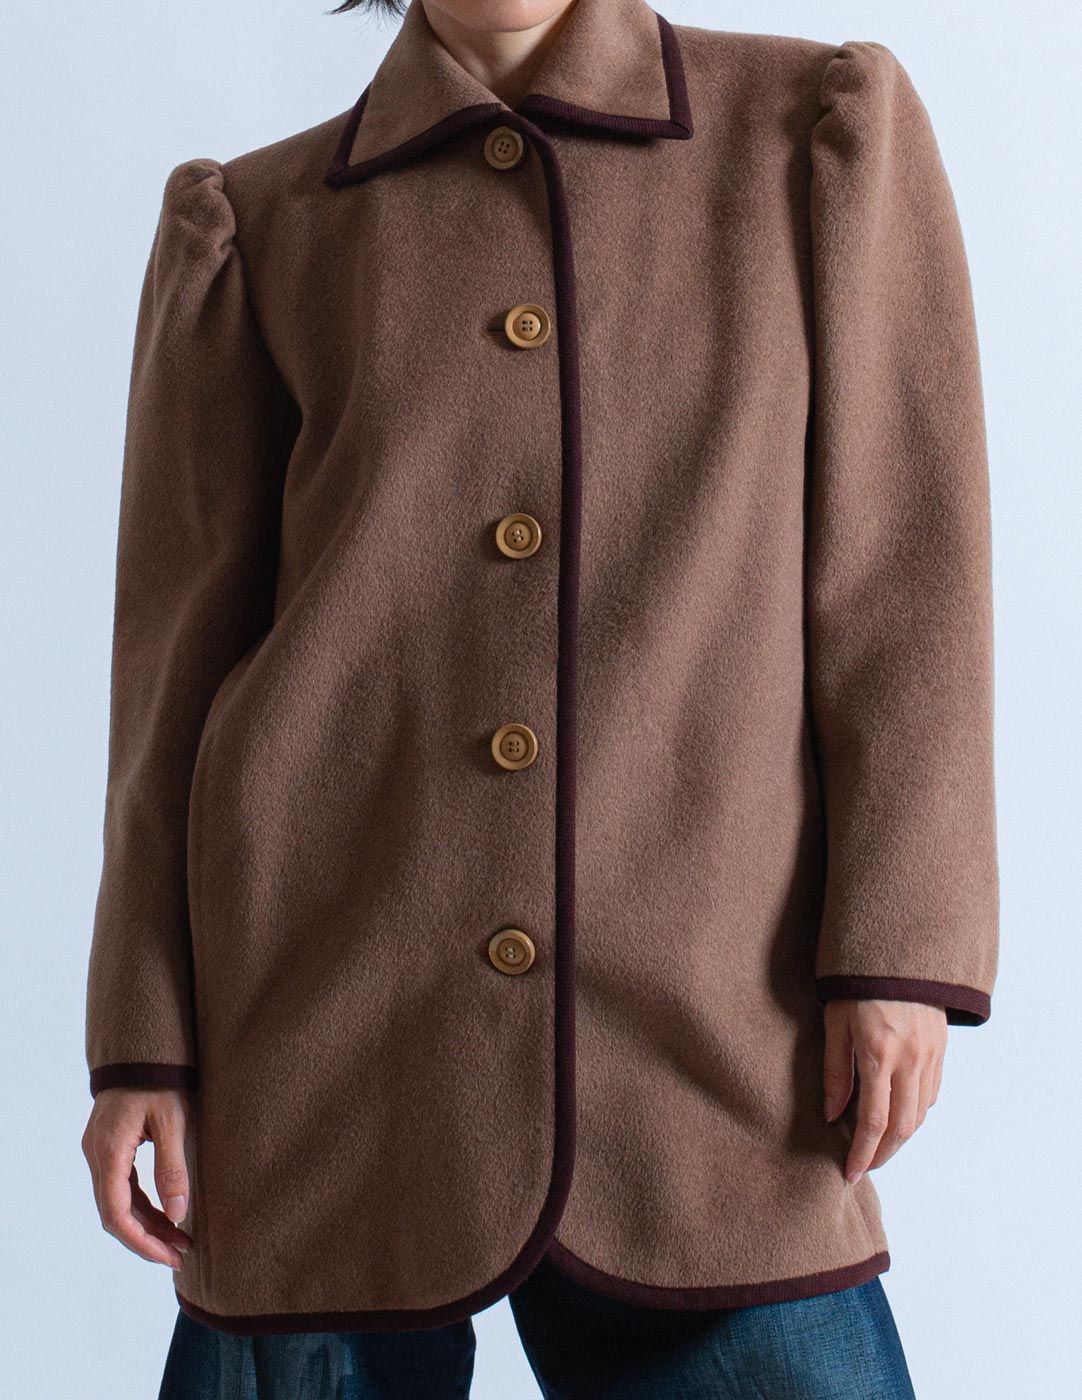 Yves Saint Laurent vintage smocked wool coat detail